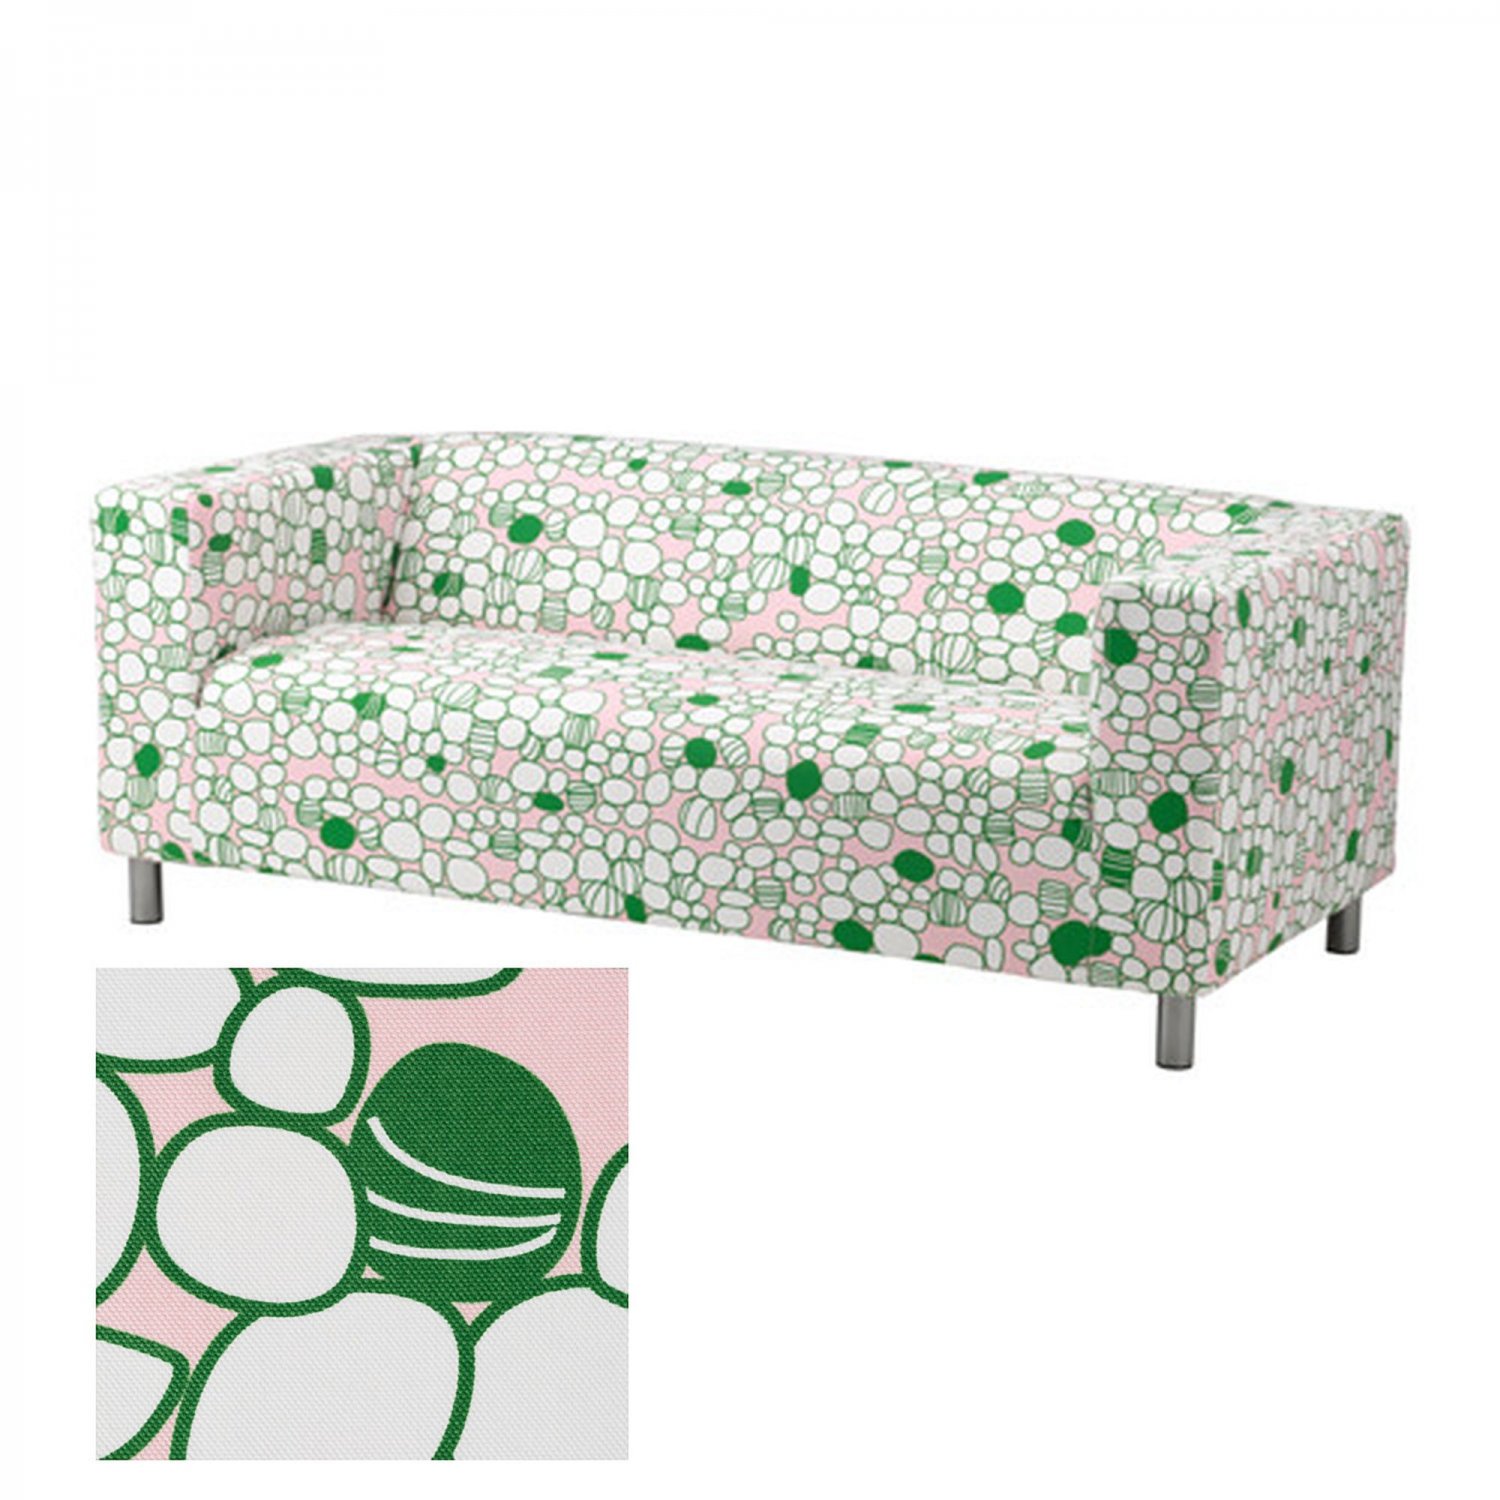 IKEA KLIPPAN Sofa SLIPCOVER Cover Green Pink MOD RETRO Marrehill